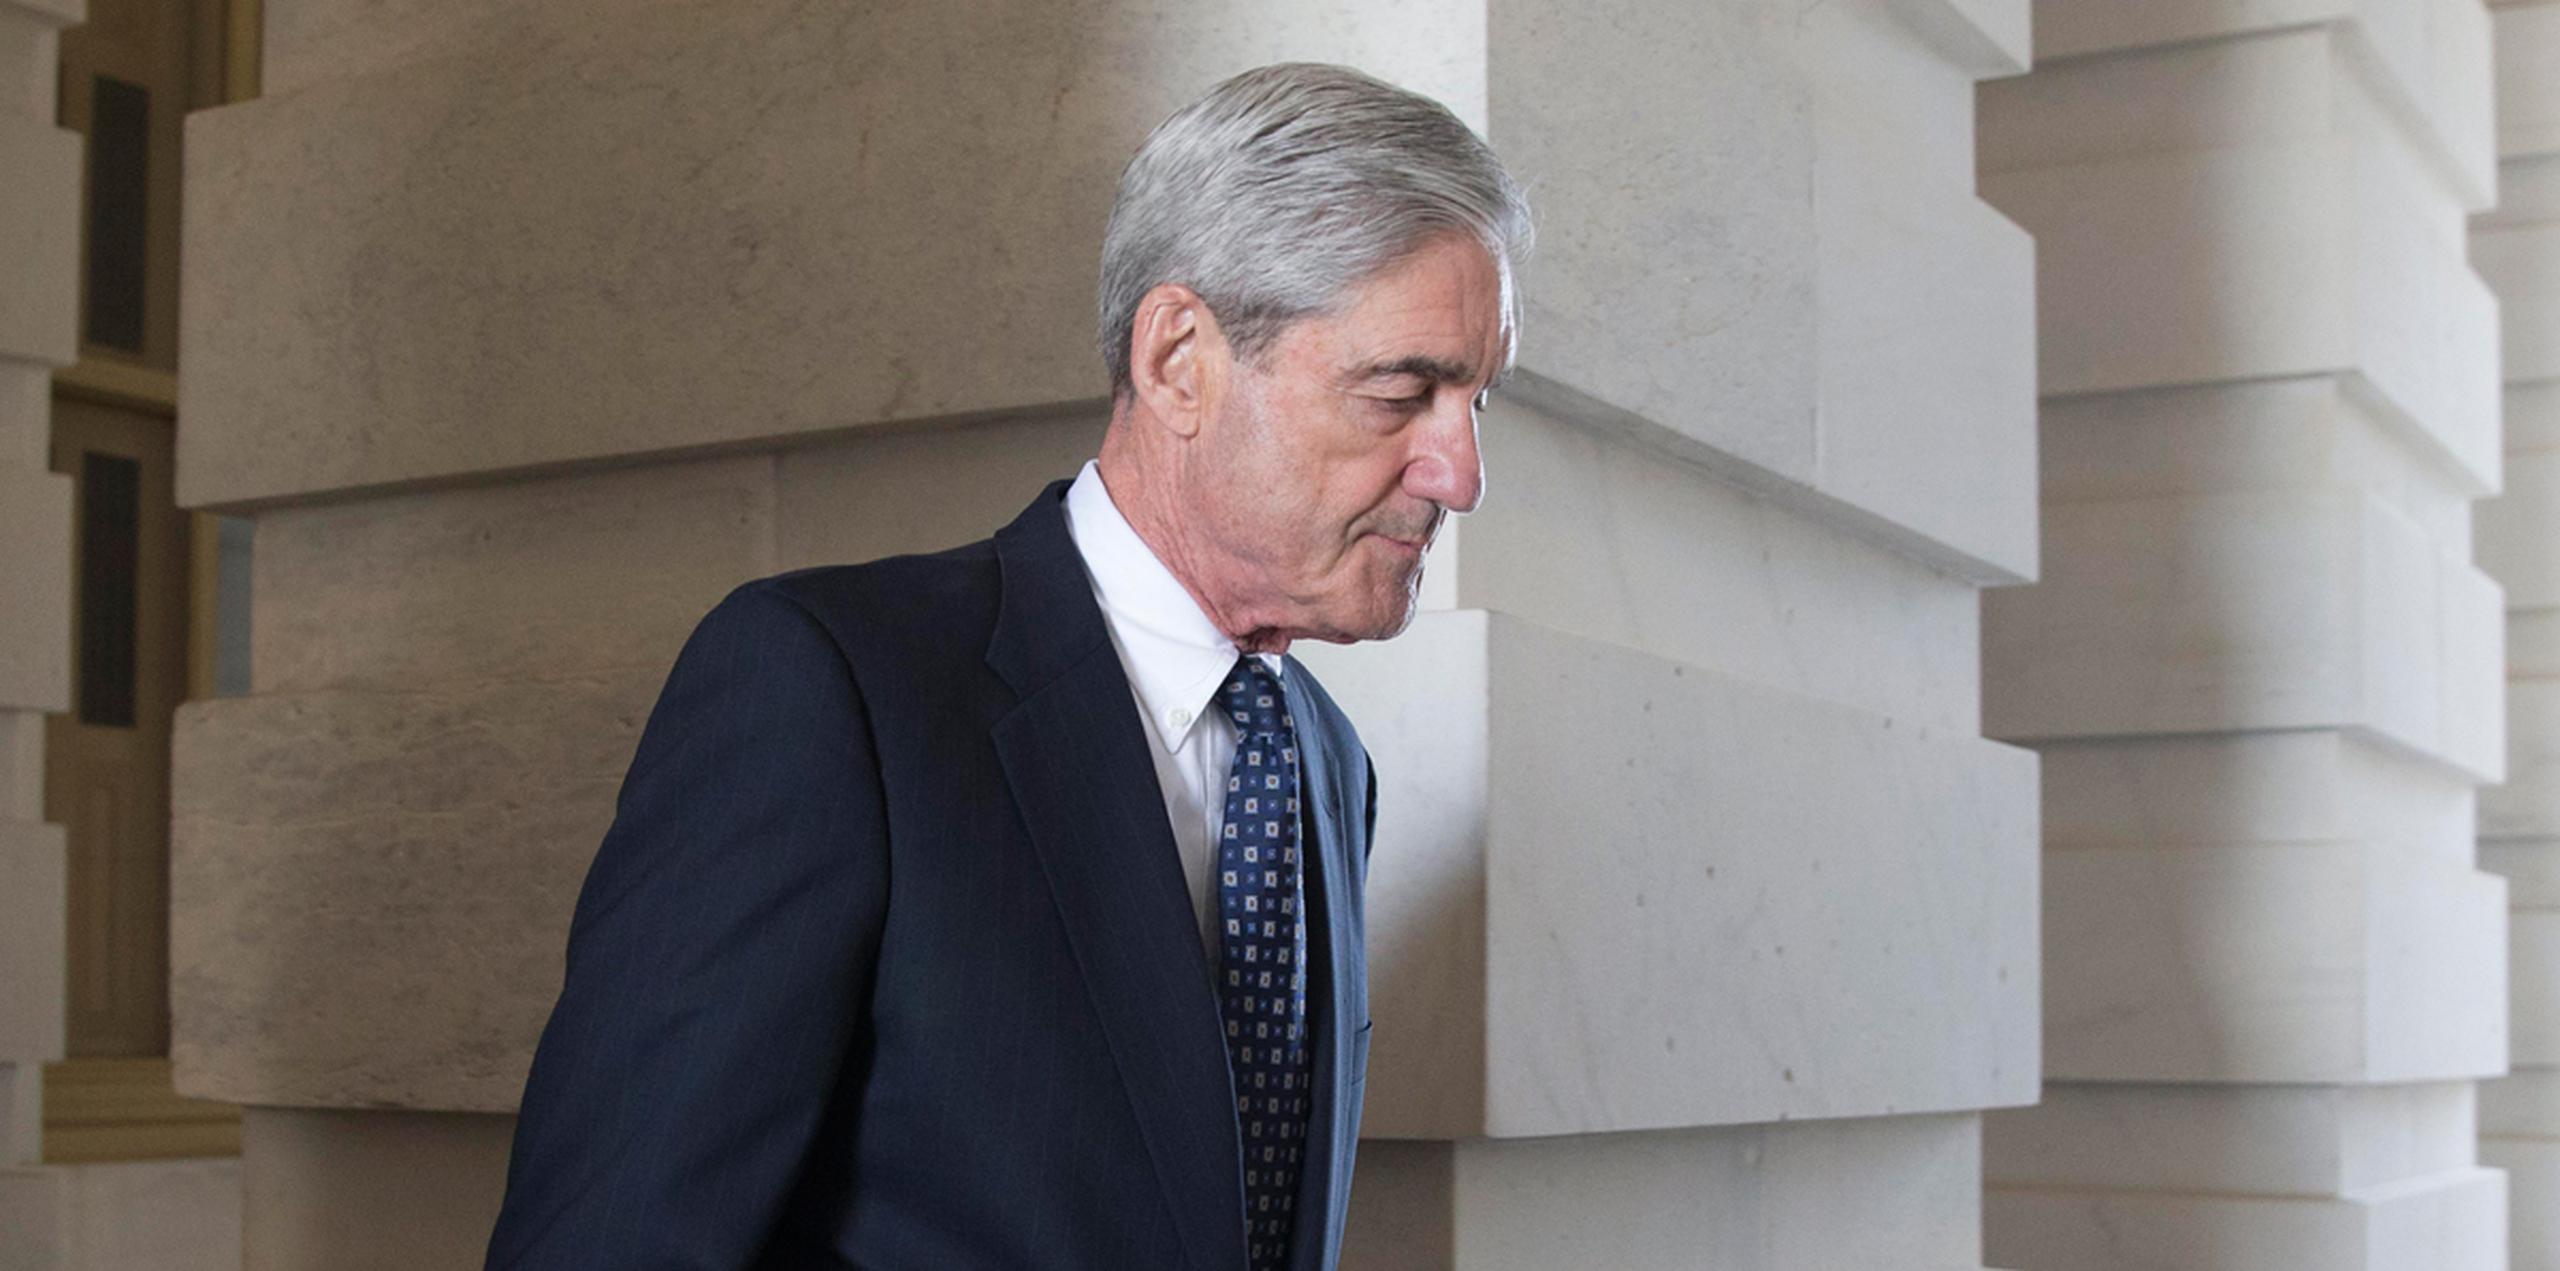 El fiscal especial y antiguo director del FBI, Robert Mueller, sale tras el Comité Permanente de Inteligencia sobre la interferencia rusa en las elecciones presidenciales de 2016, en el Capitolio en Washington. (EFE)